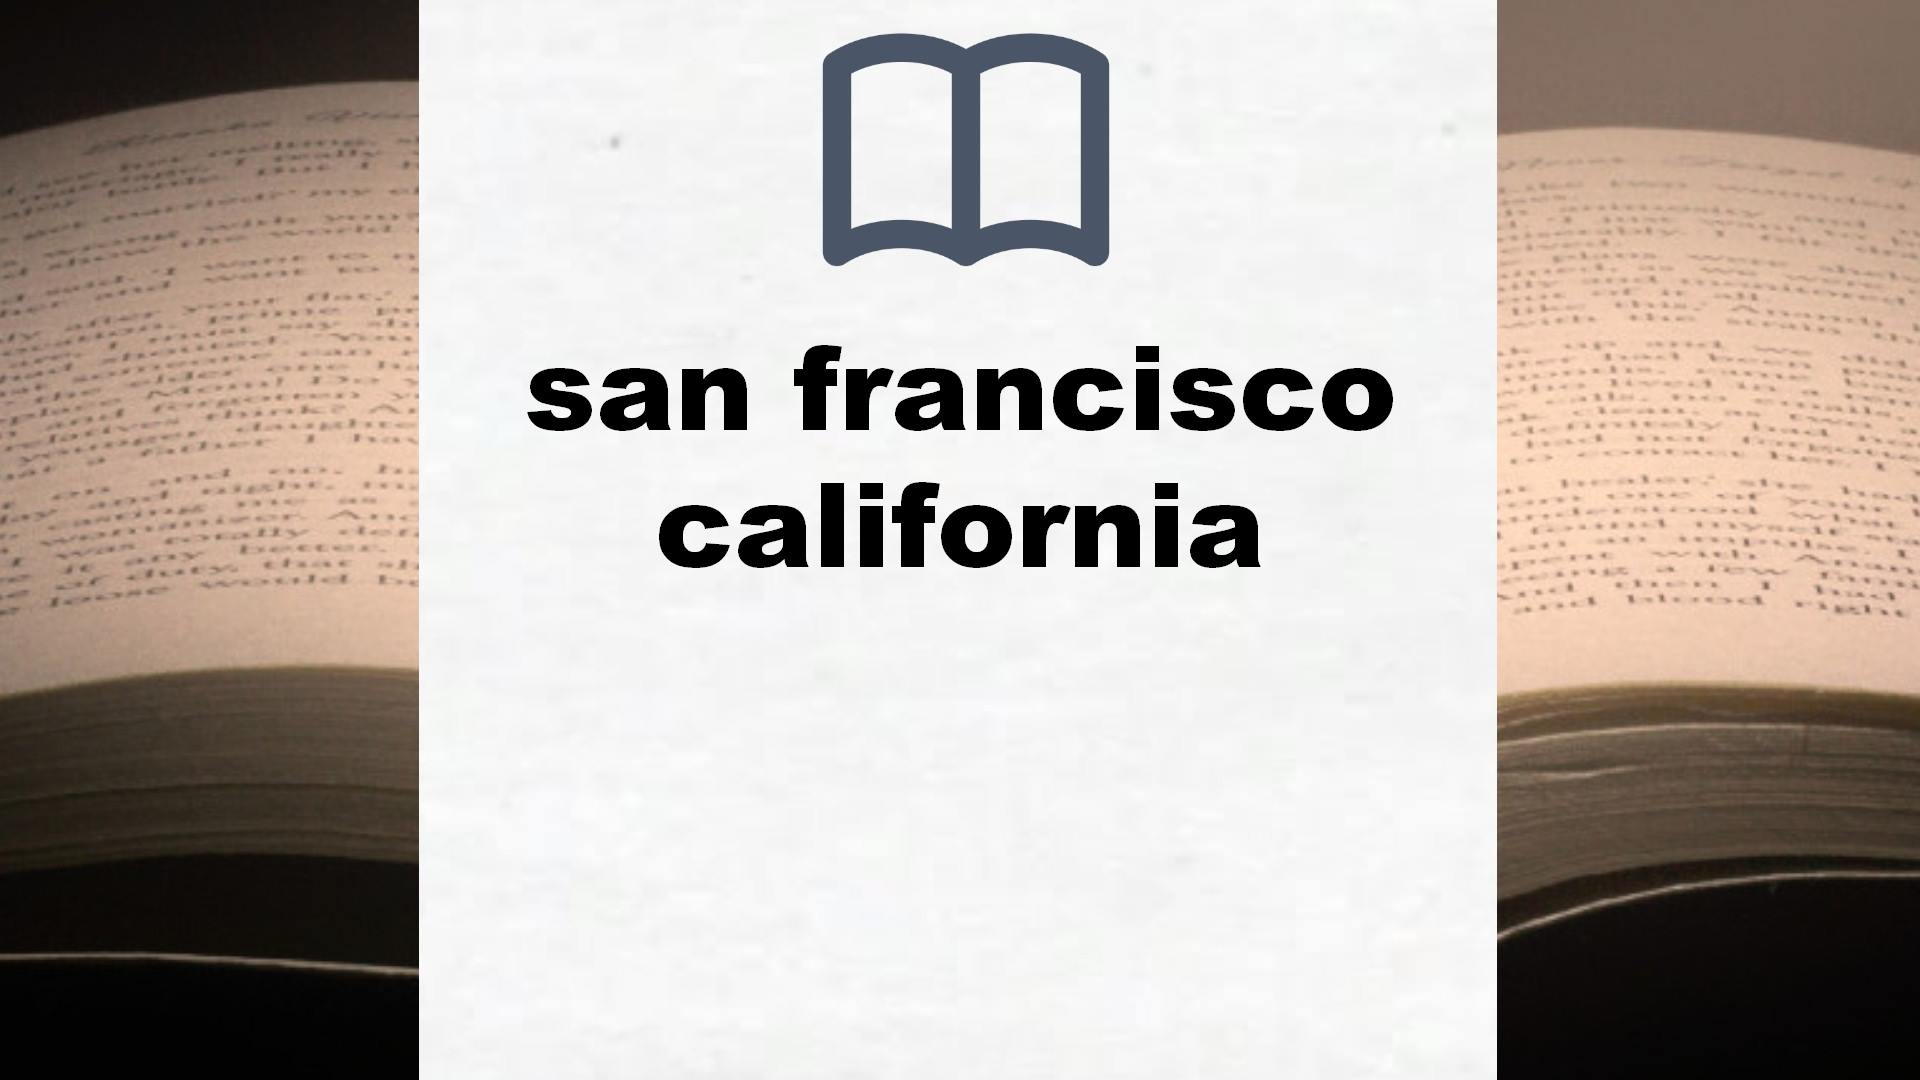 Libros sobre san francisco california